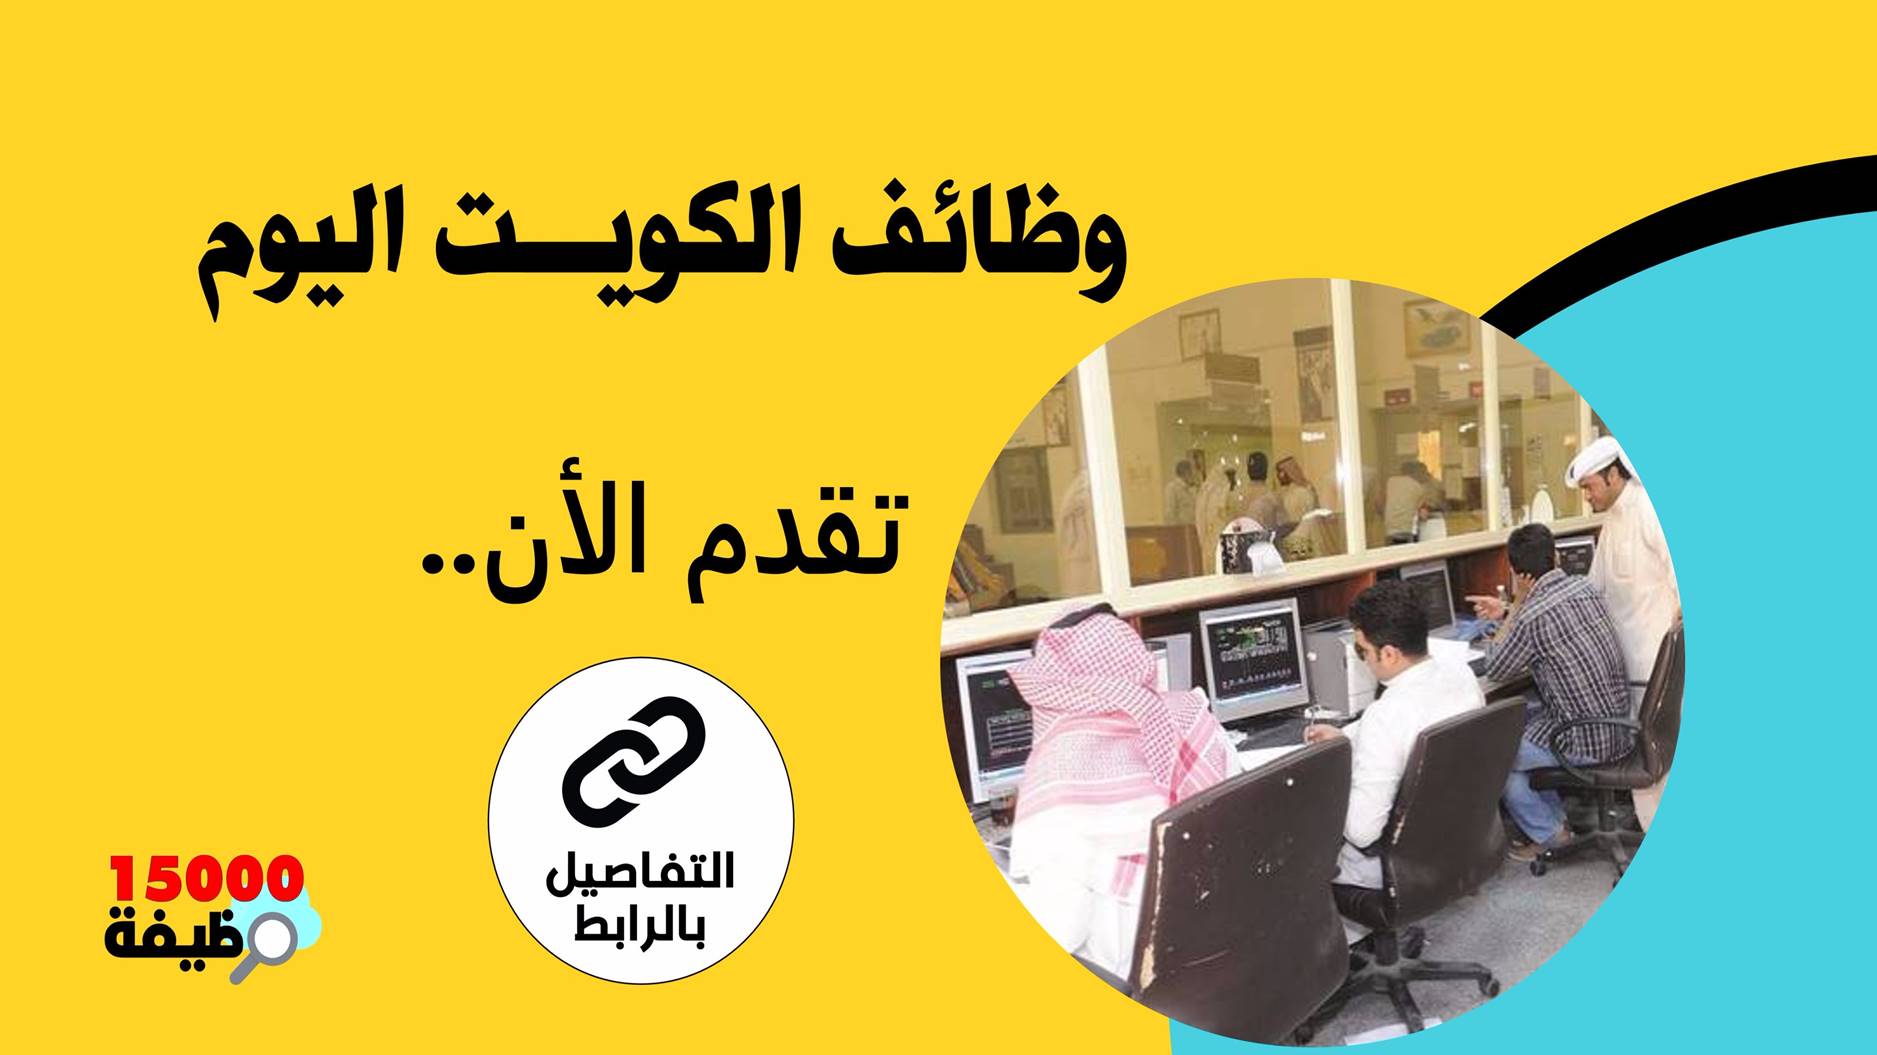 اليوم المفتوح للتوظيف في الكويت بتاريخ الجمعة 10 ديسمبر 2021